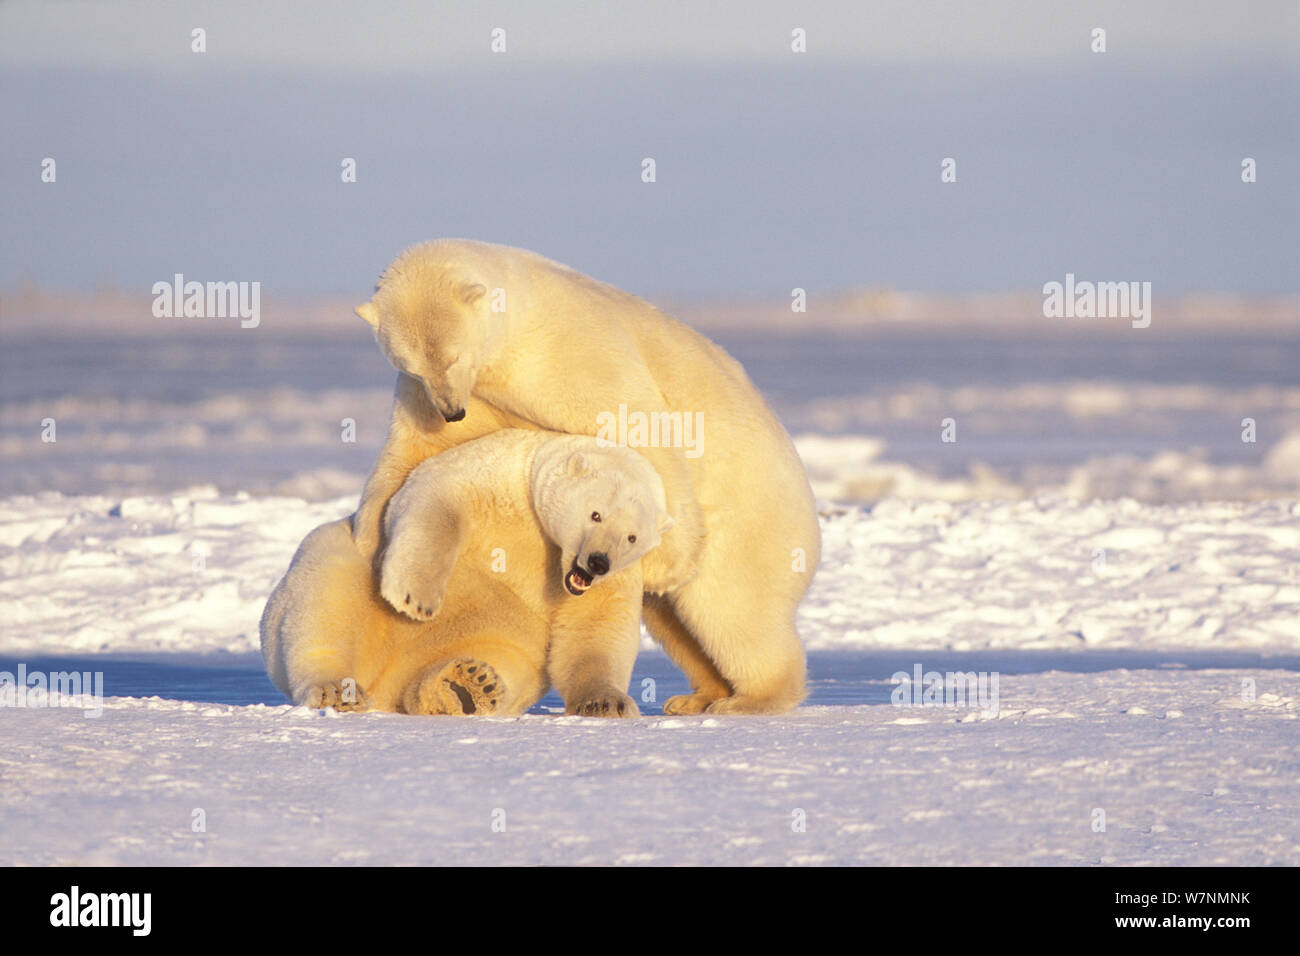 L'ours polaire (Ursus maritimus) Paire de truies adultes jouer avec l'autre sur la banquise au cours de gel de l'automne 1002, salon de l'Arctic National Wildlife Refuge, versant nord, Alaska, USA Banque D'Images